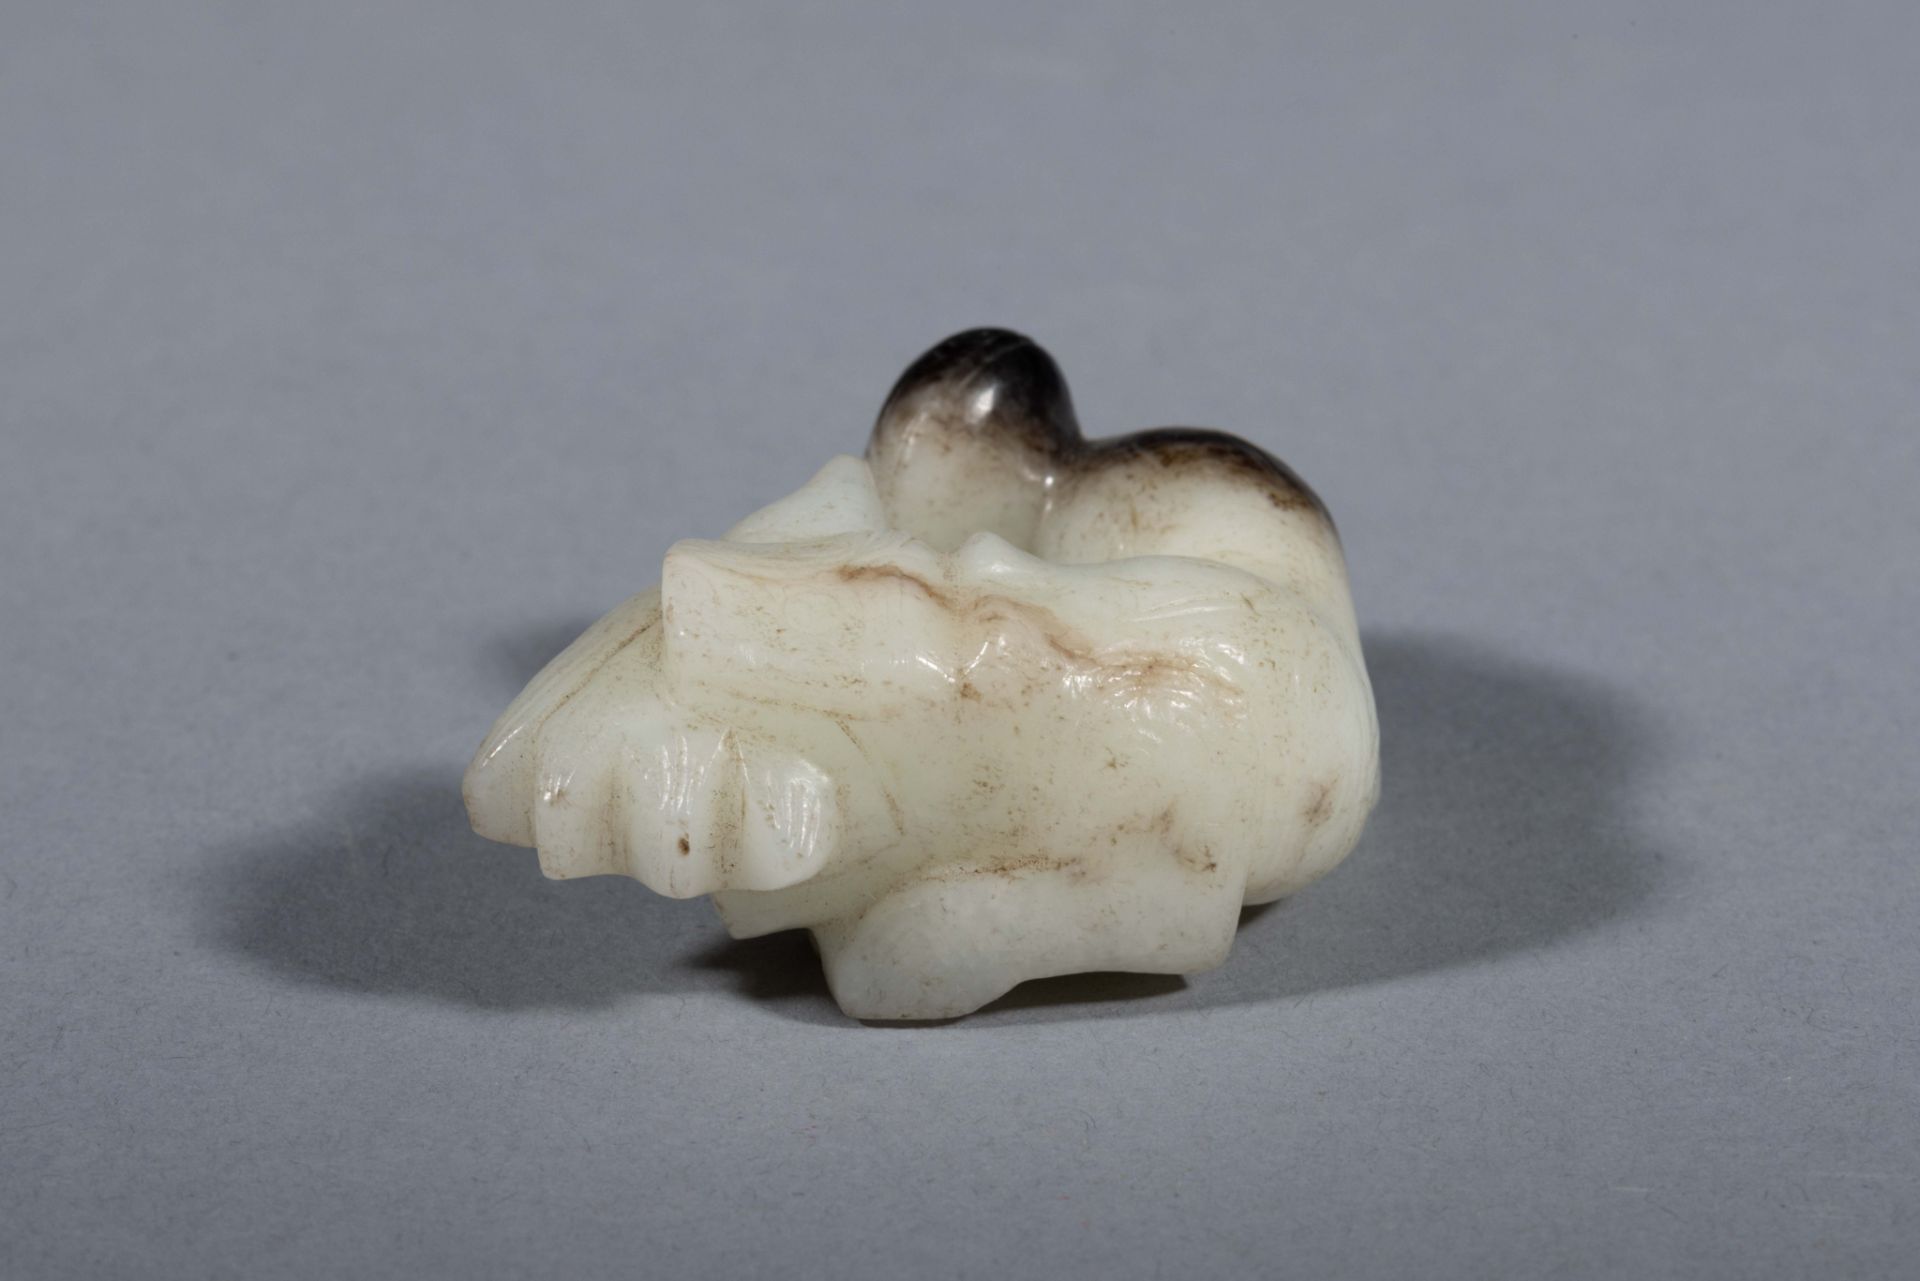 Animal, chimérique, lové Jade blanc et noir Chine Période, des Zhou de l’Ouest 11eme siècle à 770, - Bild 3 aus 9